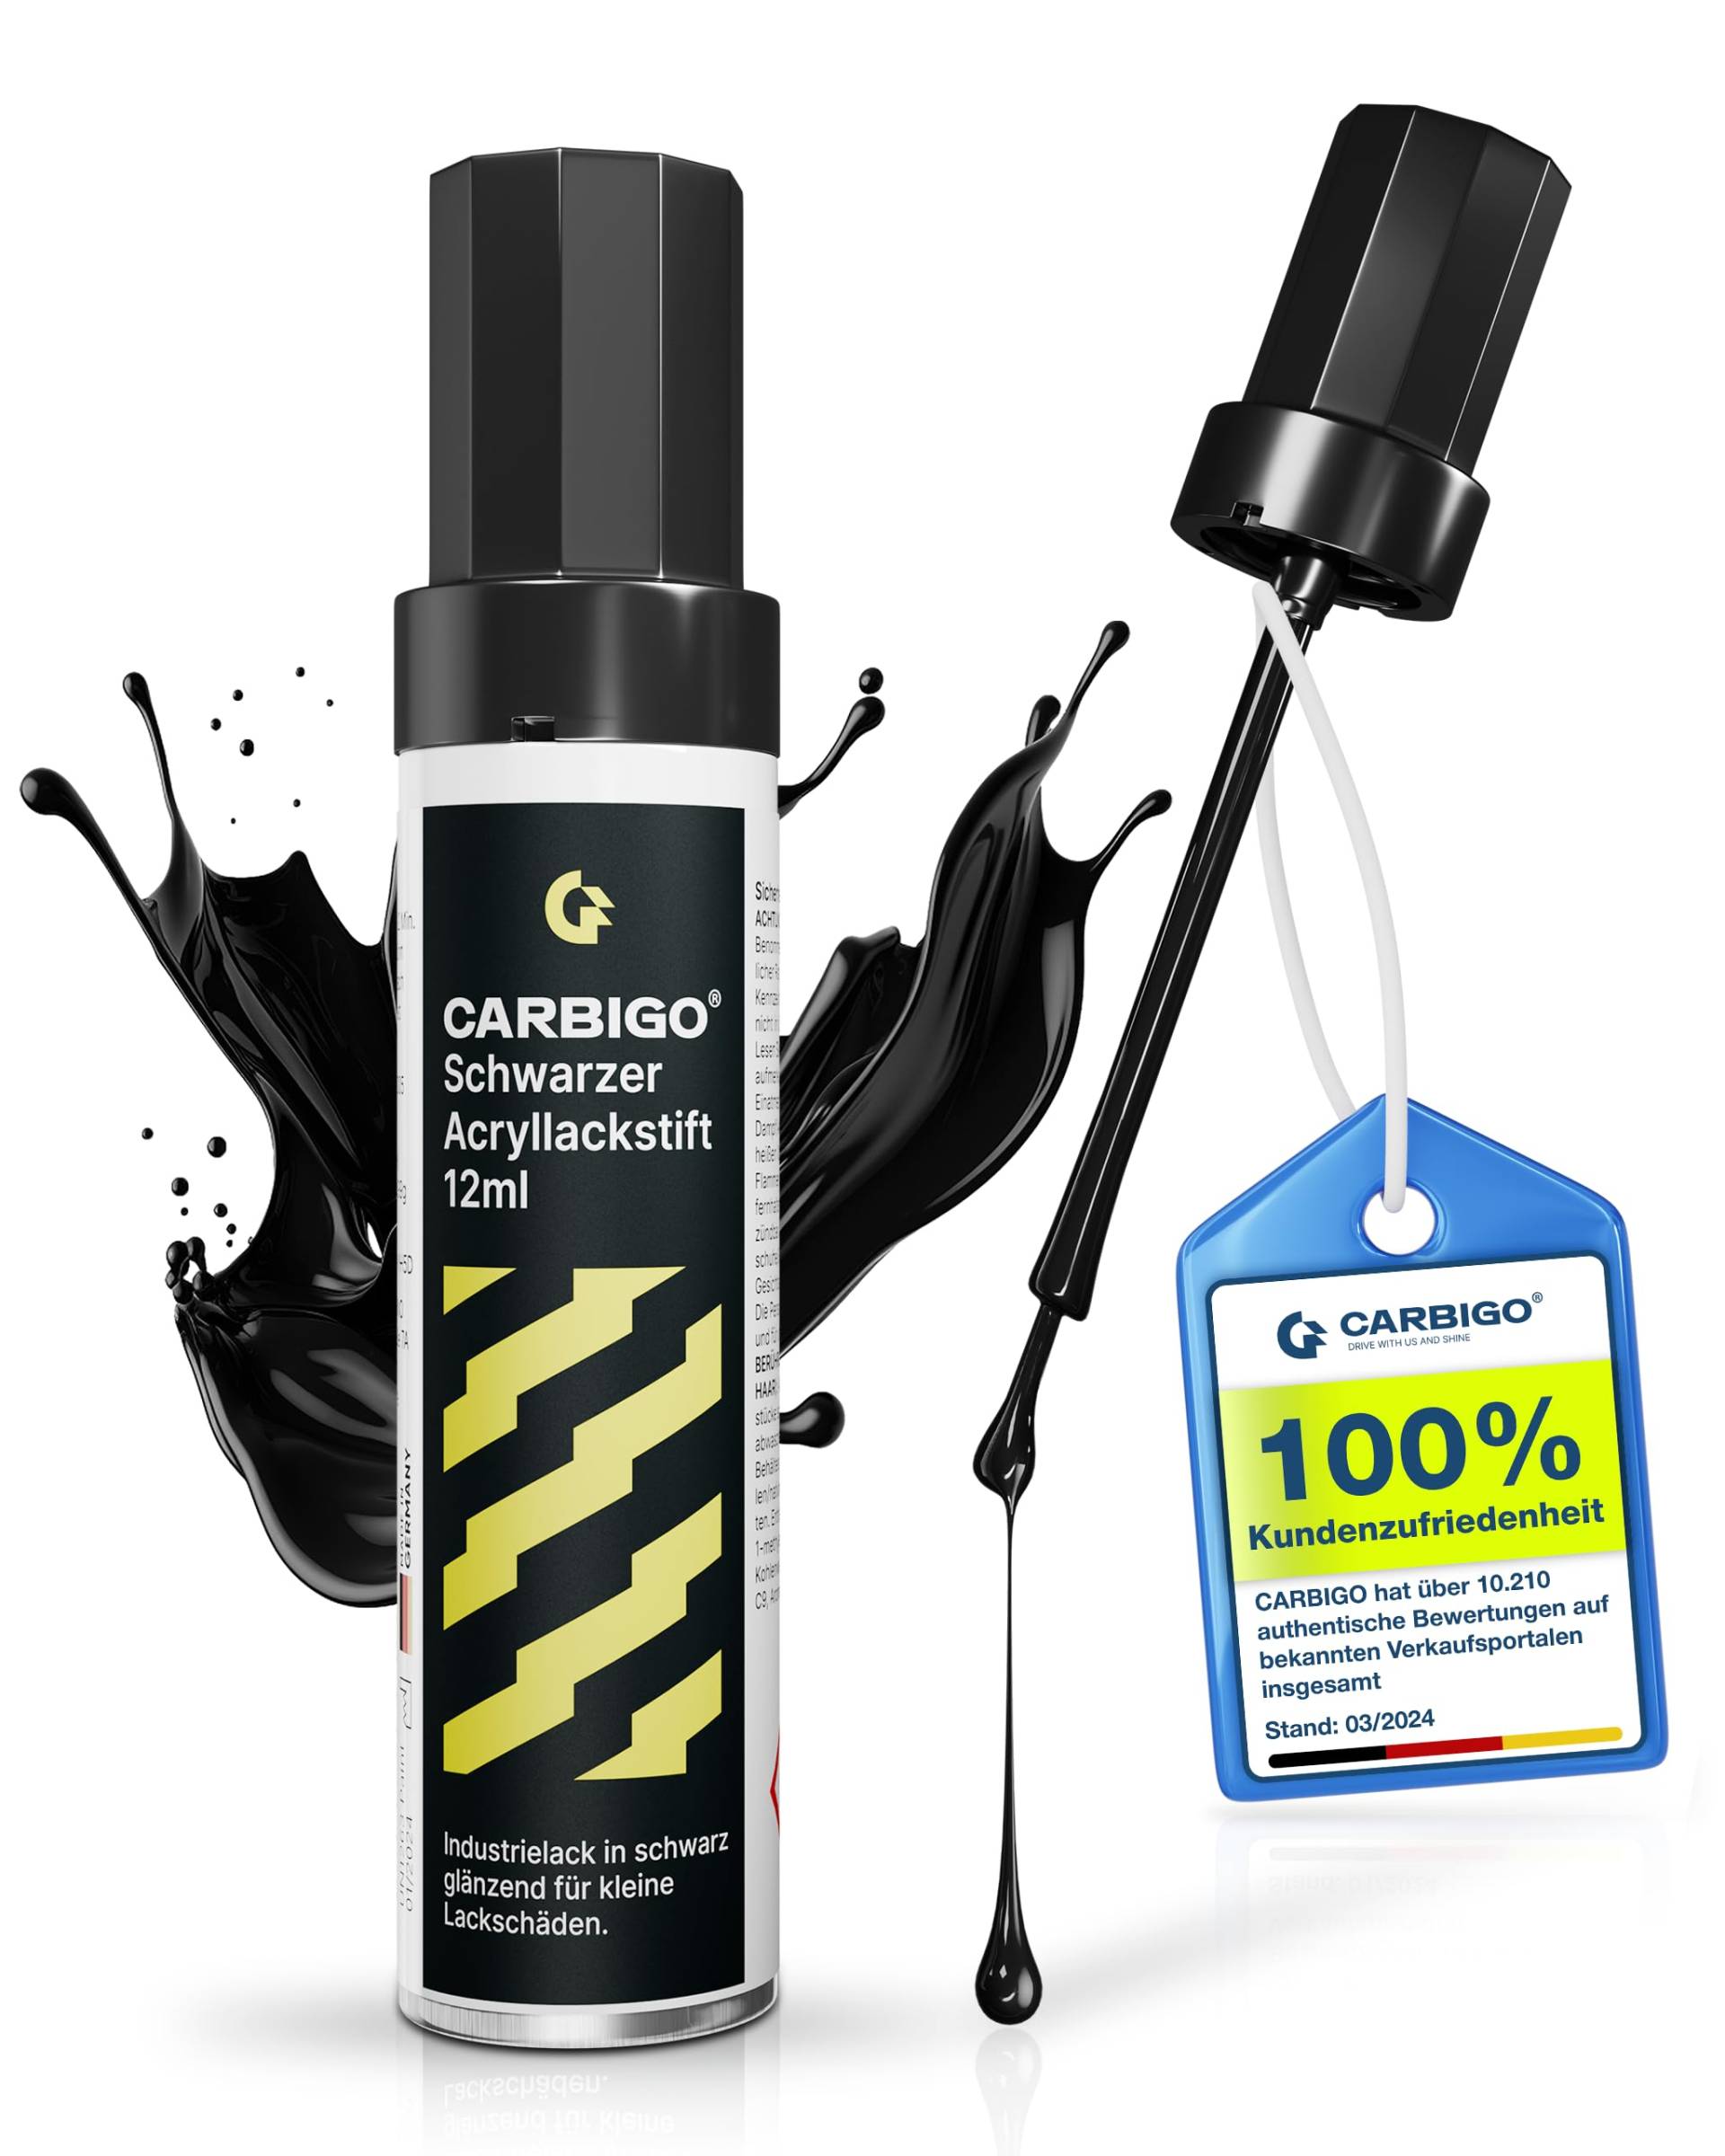 Carbigo® Premium Lackstift Schwarz Glänzend [12ml] - Made in Germany - Auto Lackstift Schwarz gegen Kratzer und Steinschläge - Lackstift Auto Starke Deckkraft Dickflüssig von Carbigo